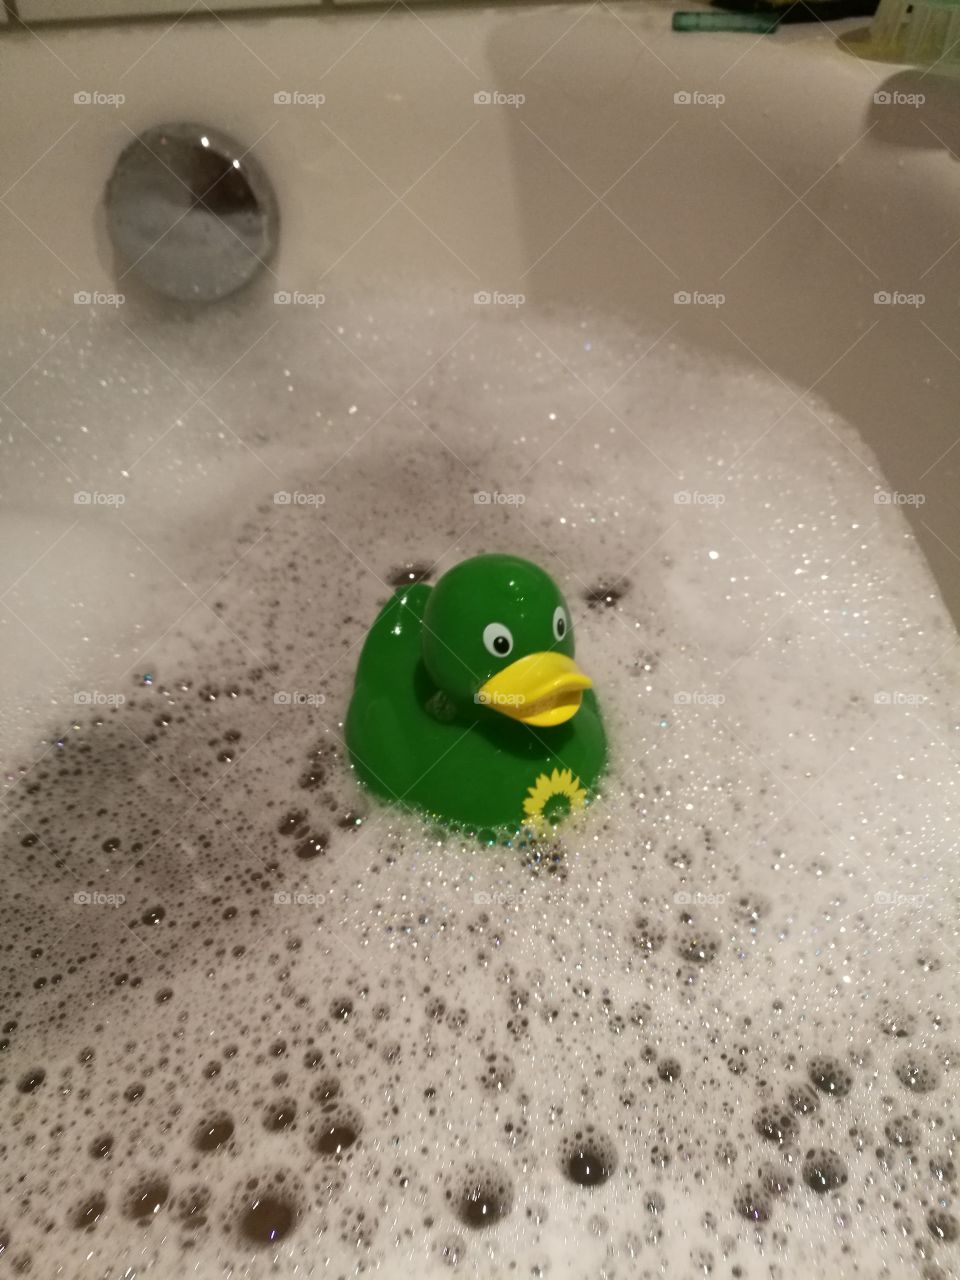 Green Rubber Duck